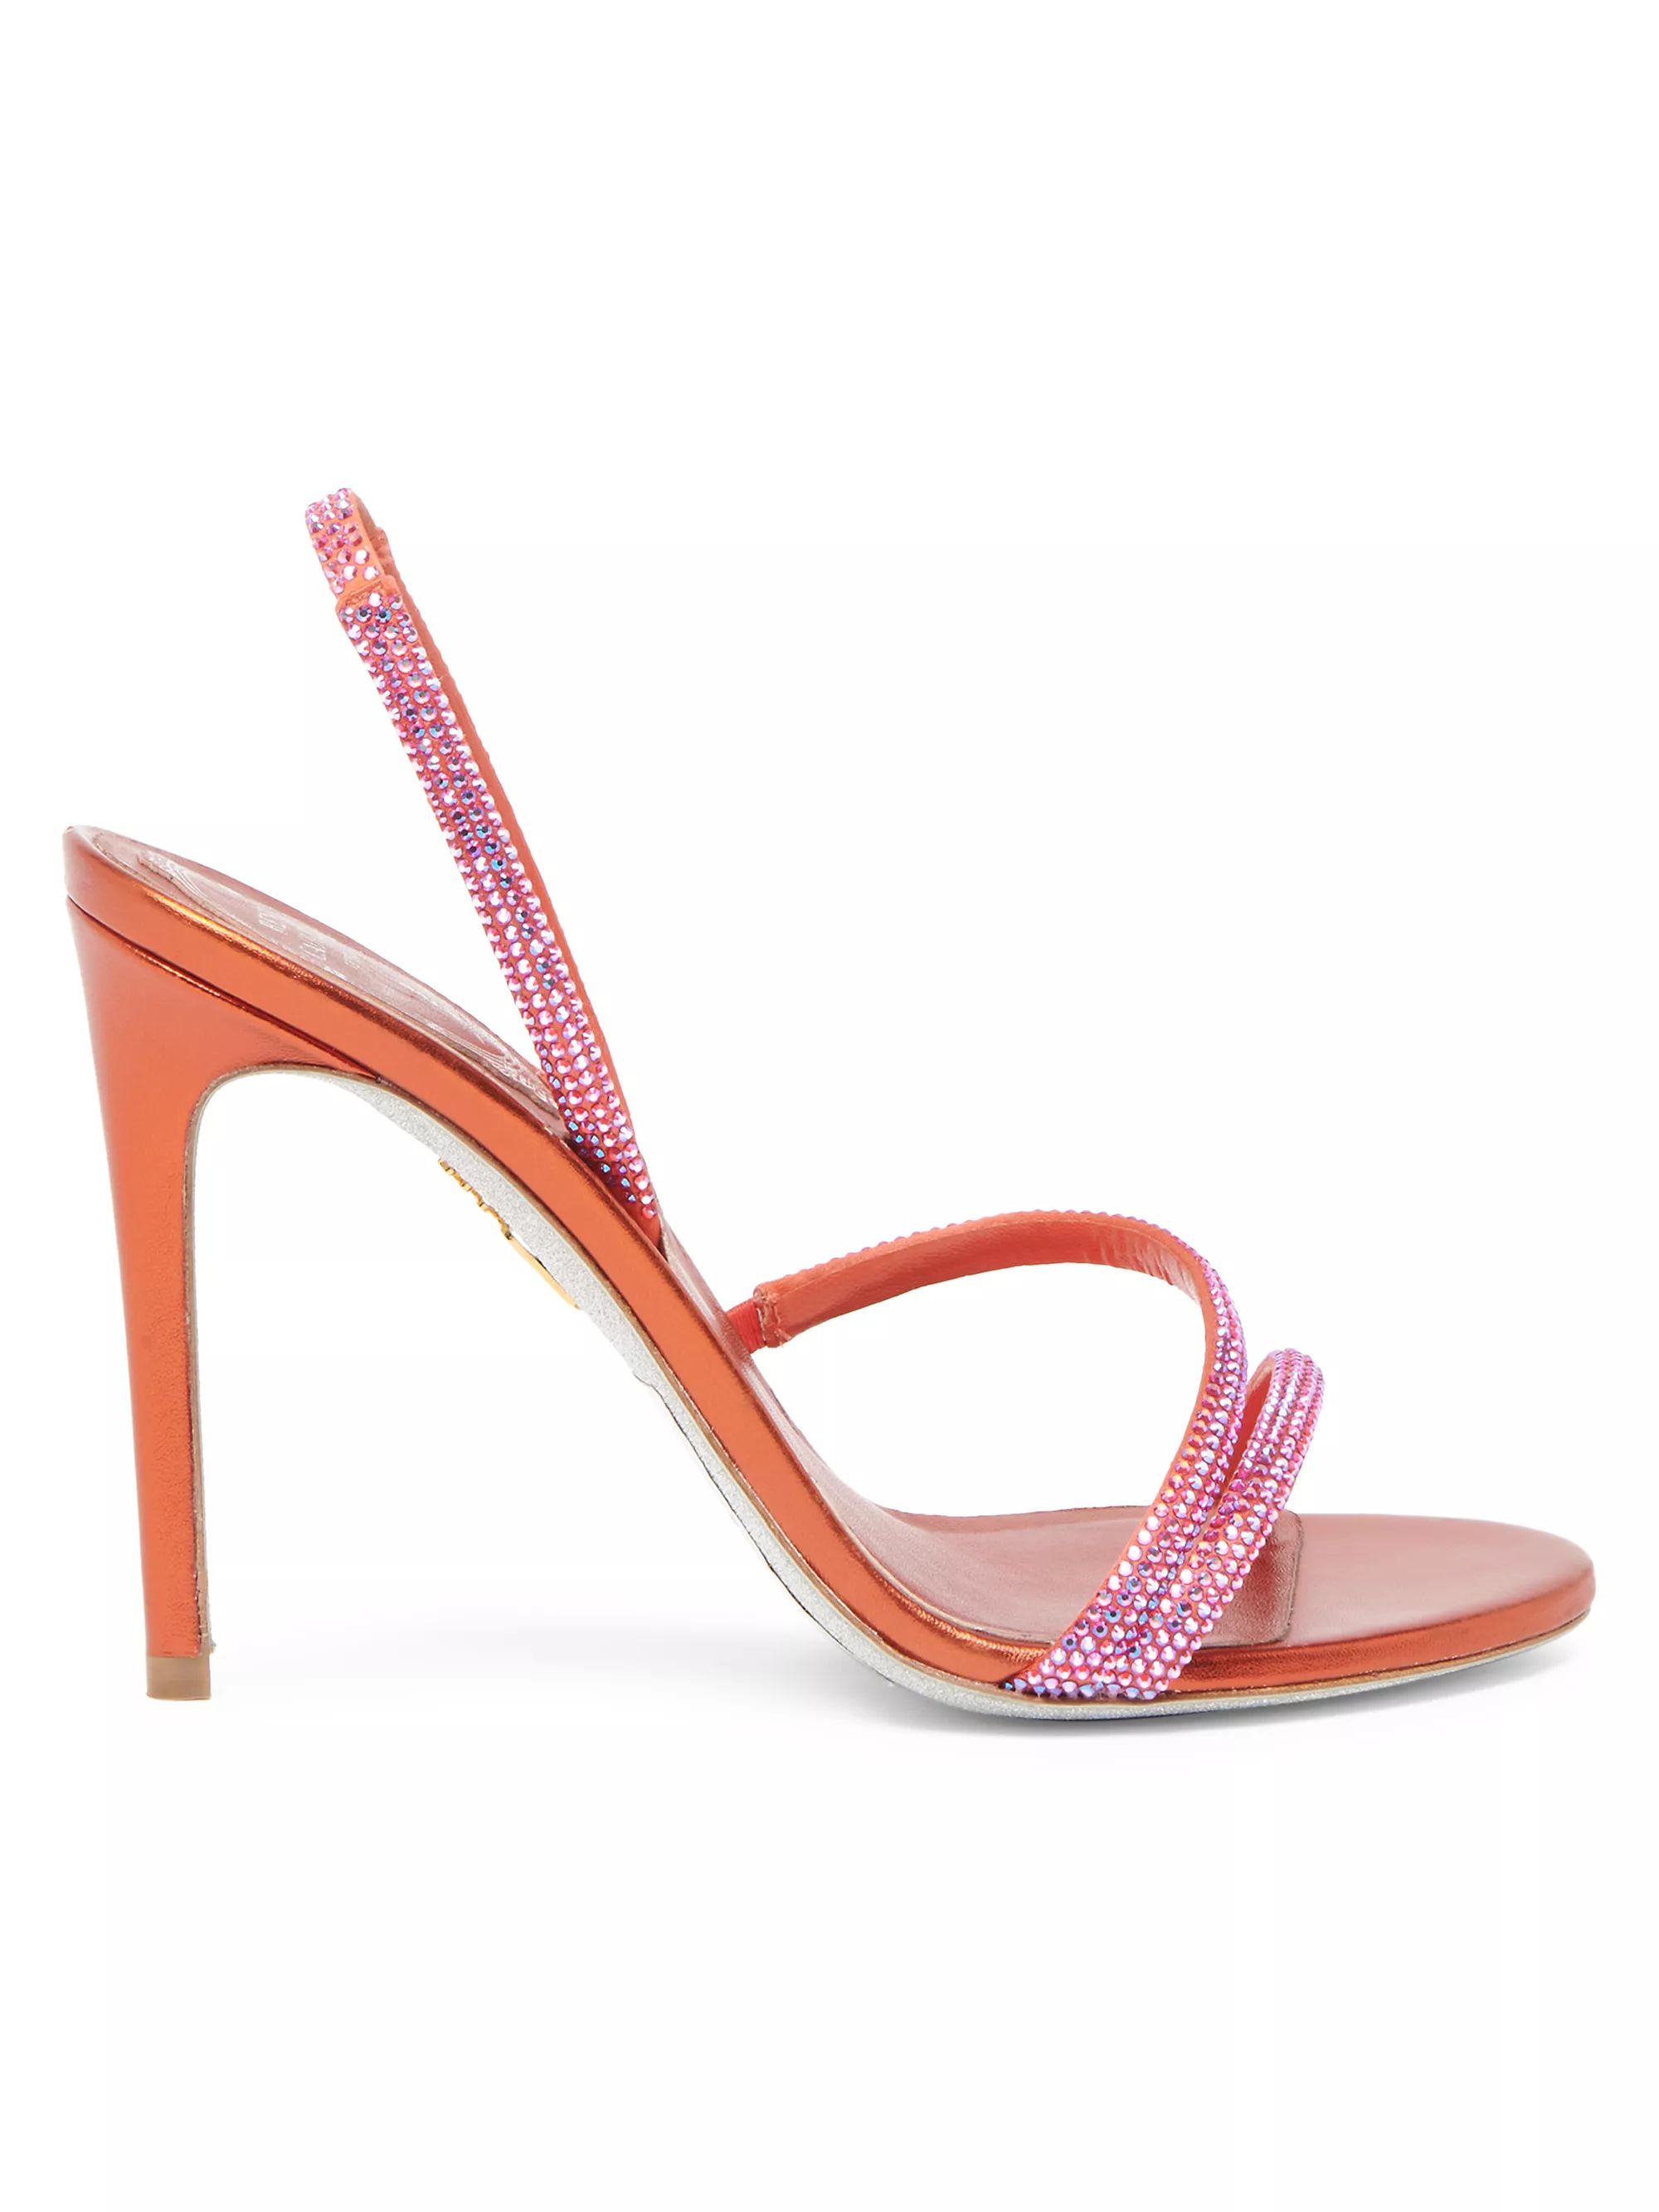 Satin Bead-Embellished Slingback Sandals | Saks Fifth Avenue